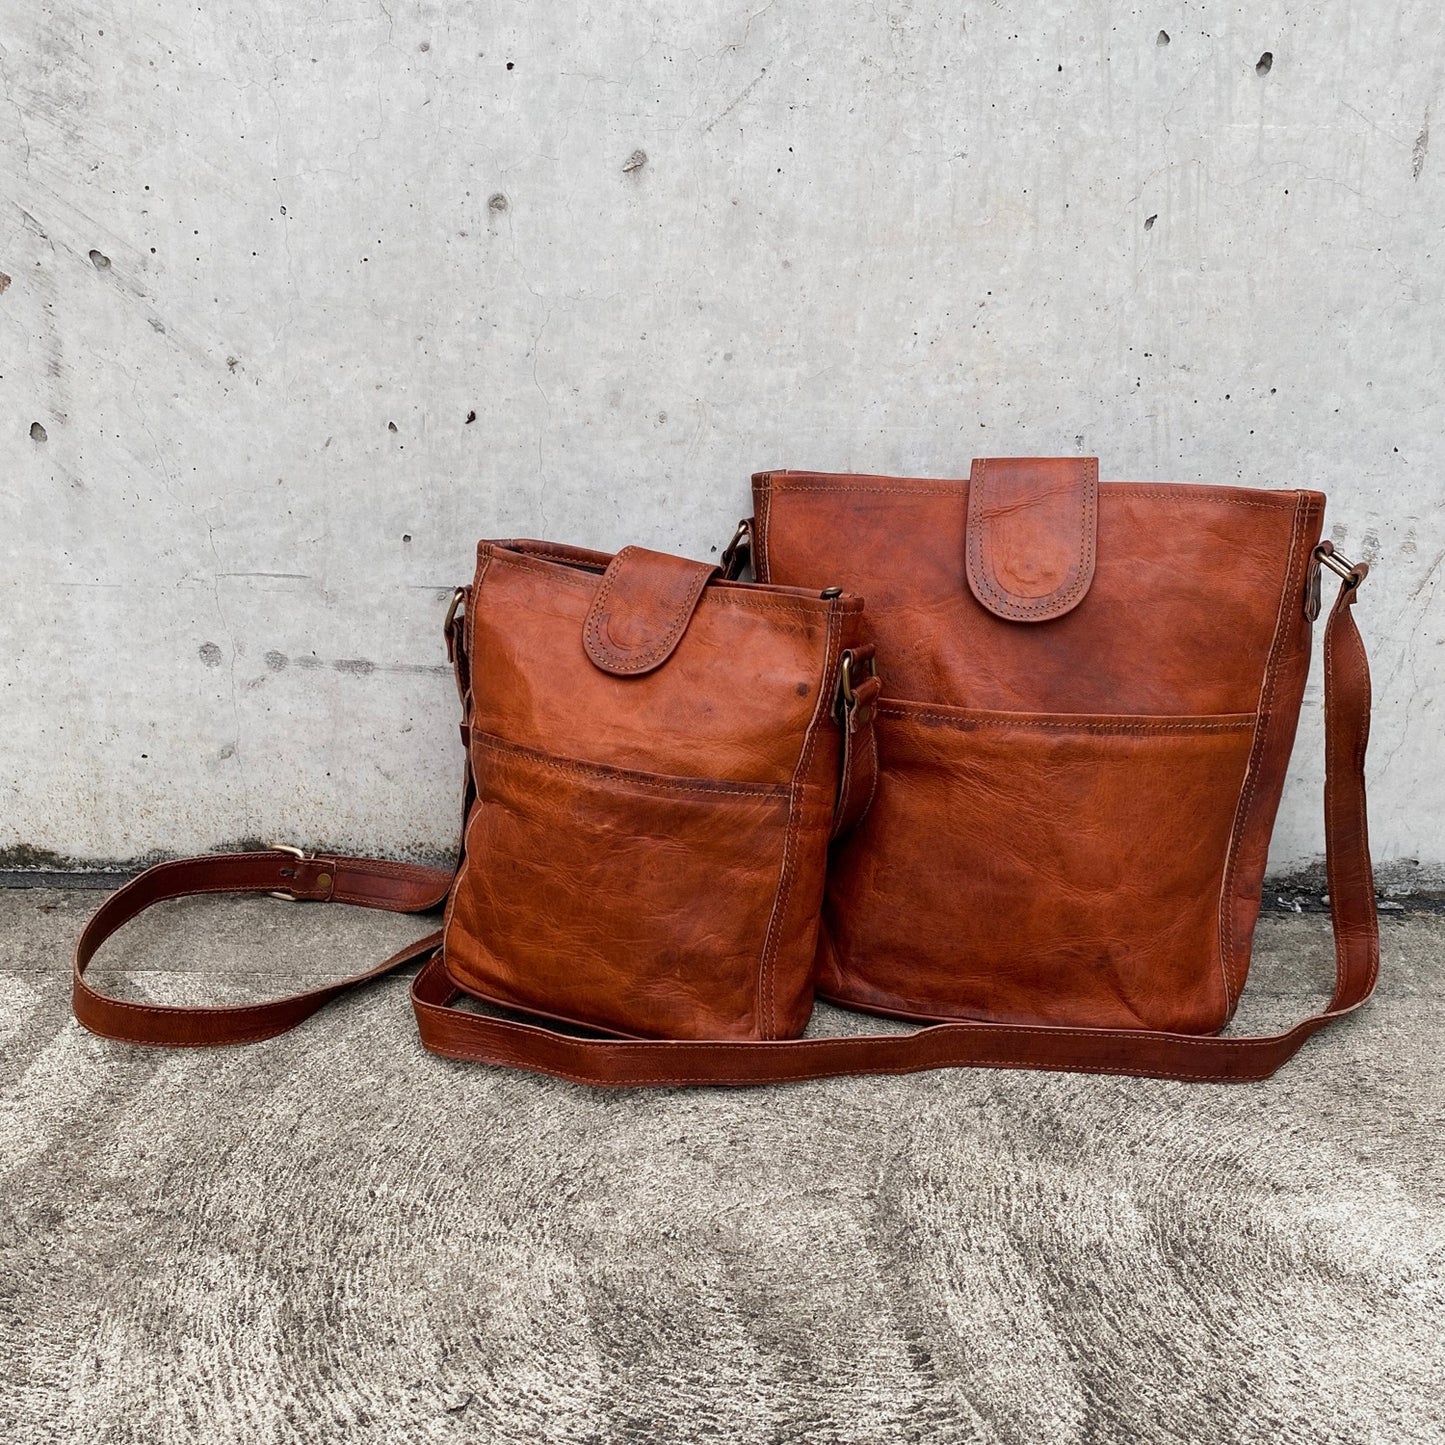 Billy Goat Designs - Leather Shoulder Bag w/ Zip - Large 12" (SBP12)